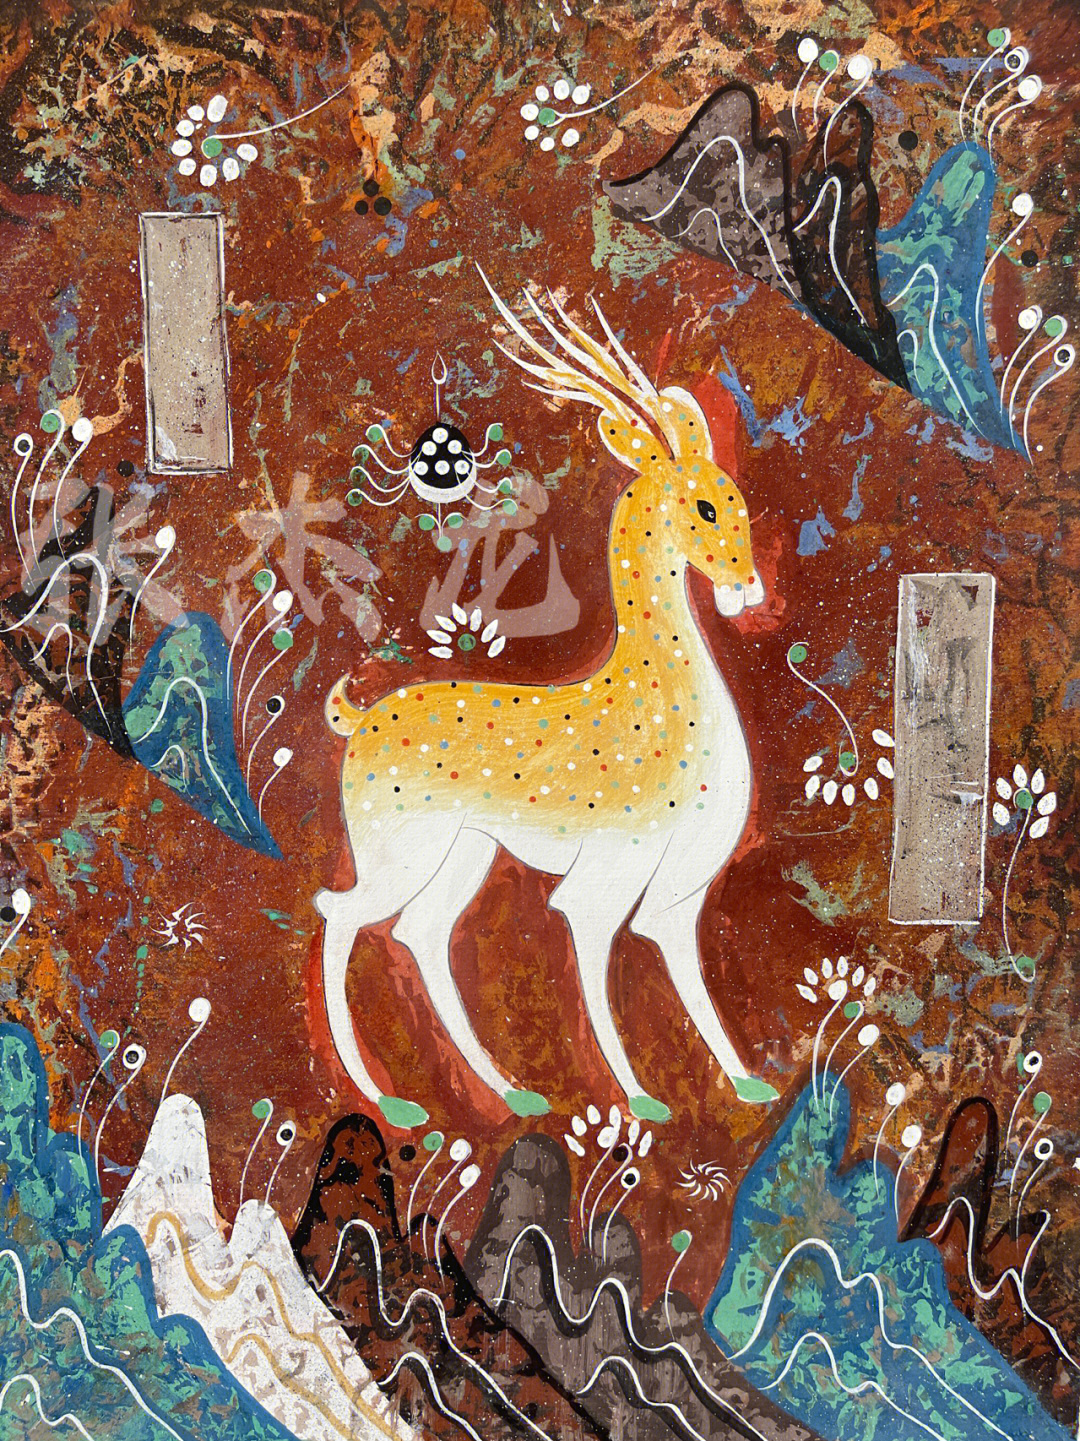 材料:岩彩 手工宣 50×45敦煌壁画九色鹿象征着温润善良,诚实守信